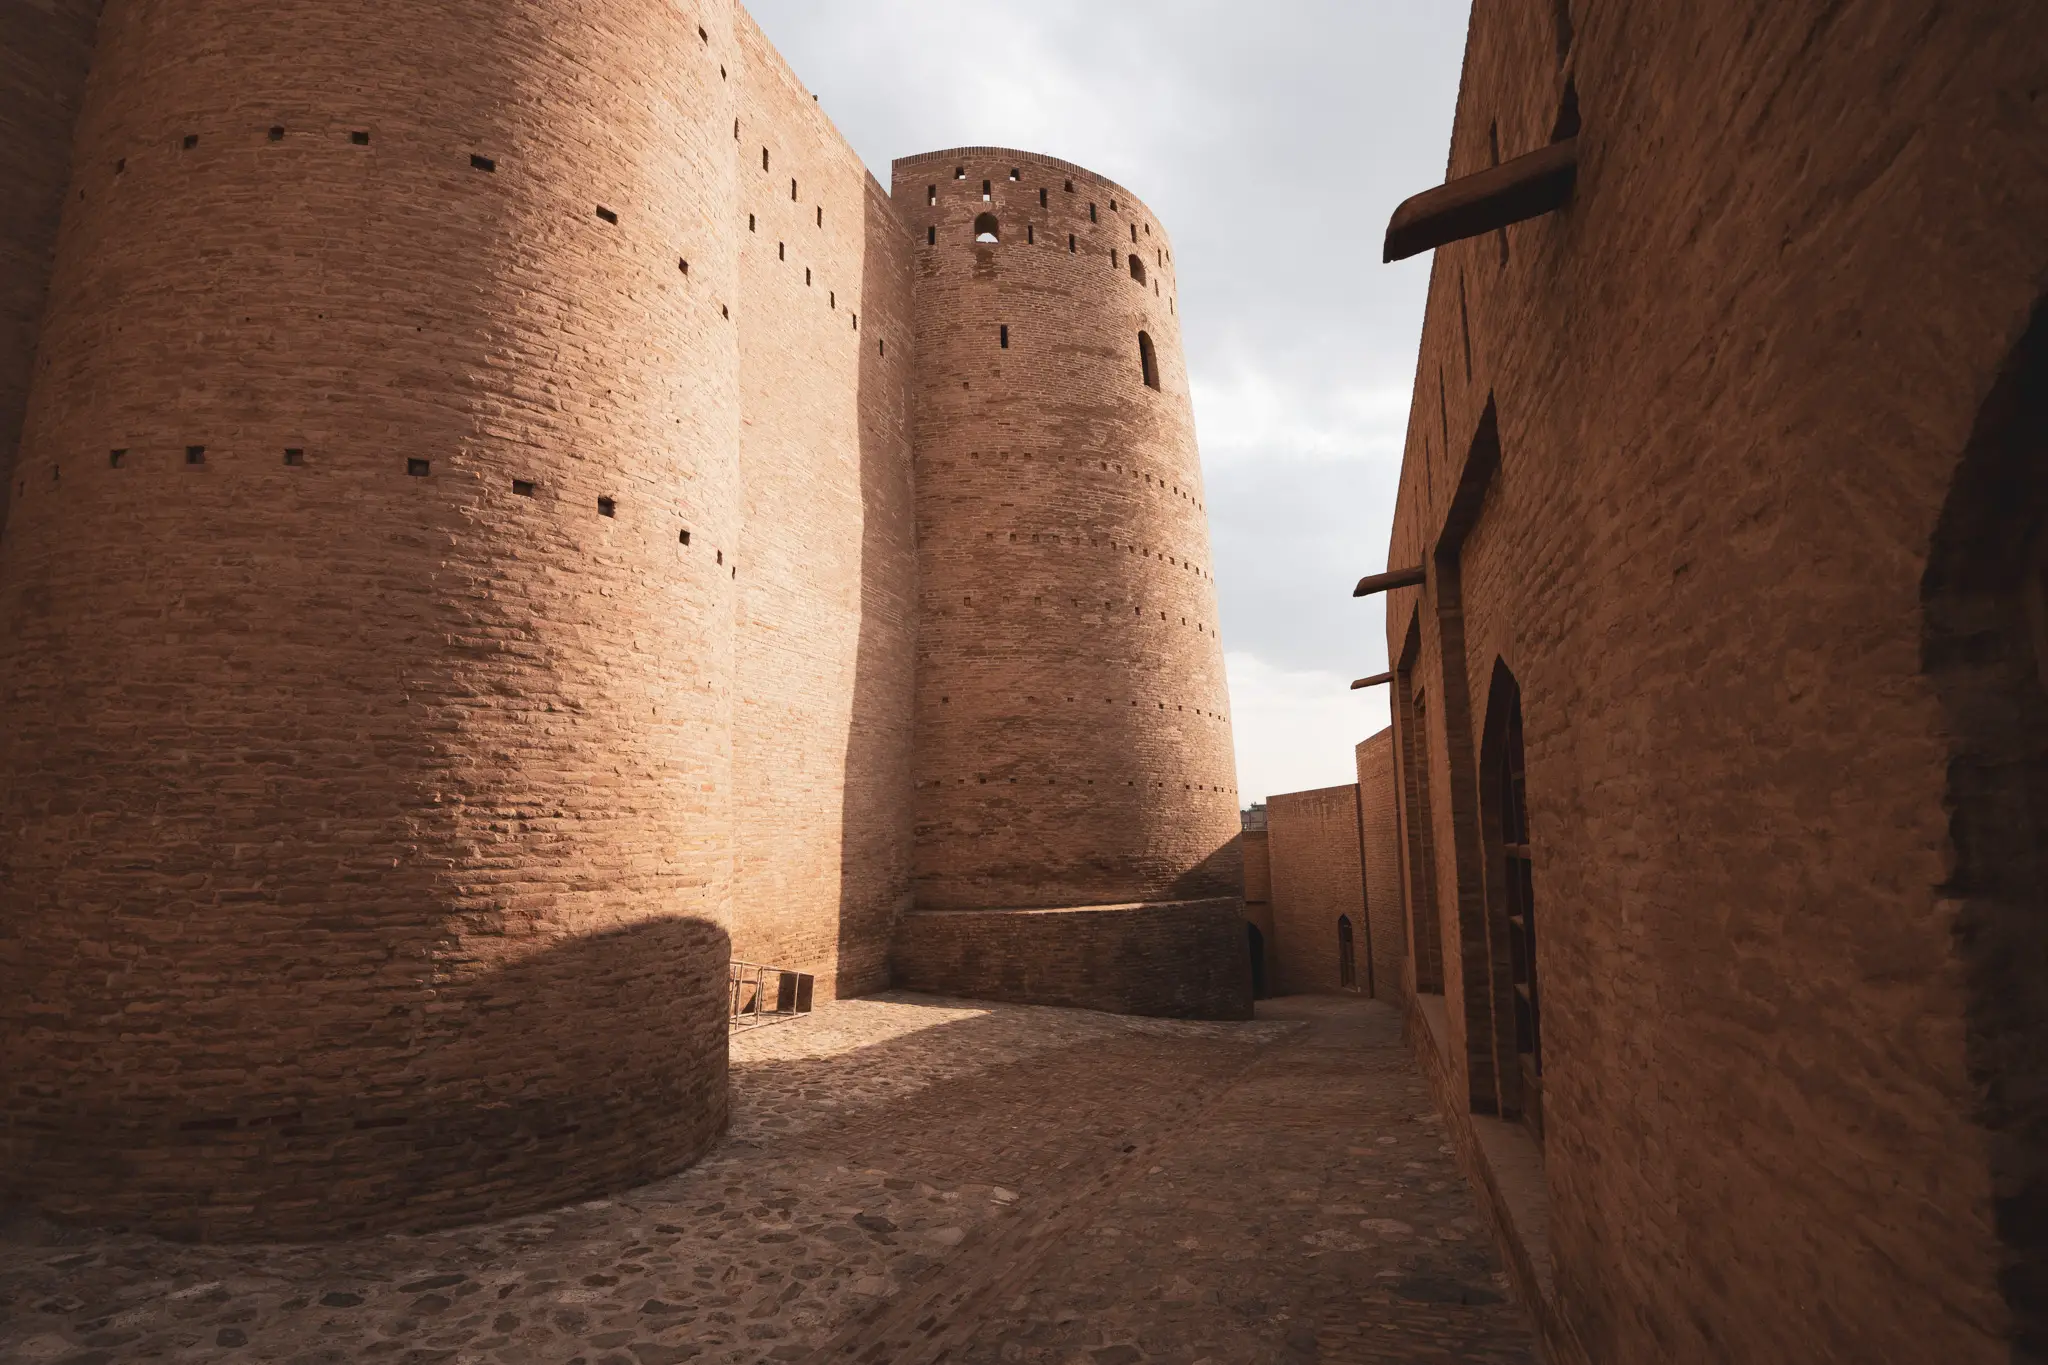 Inside the Herat Citadel